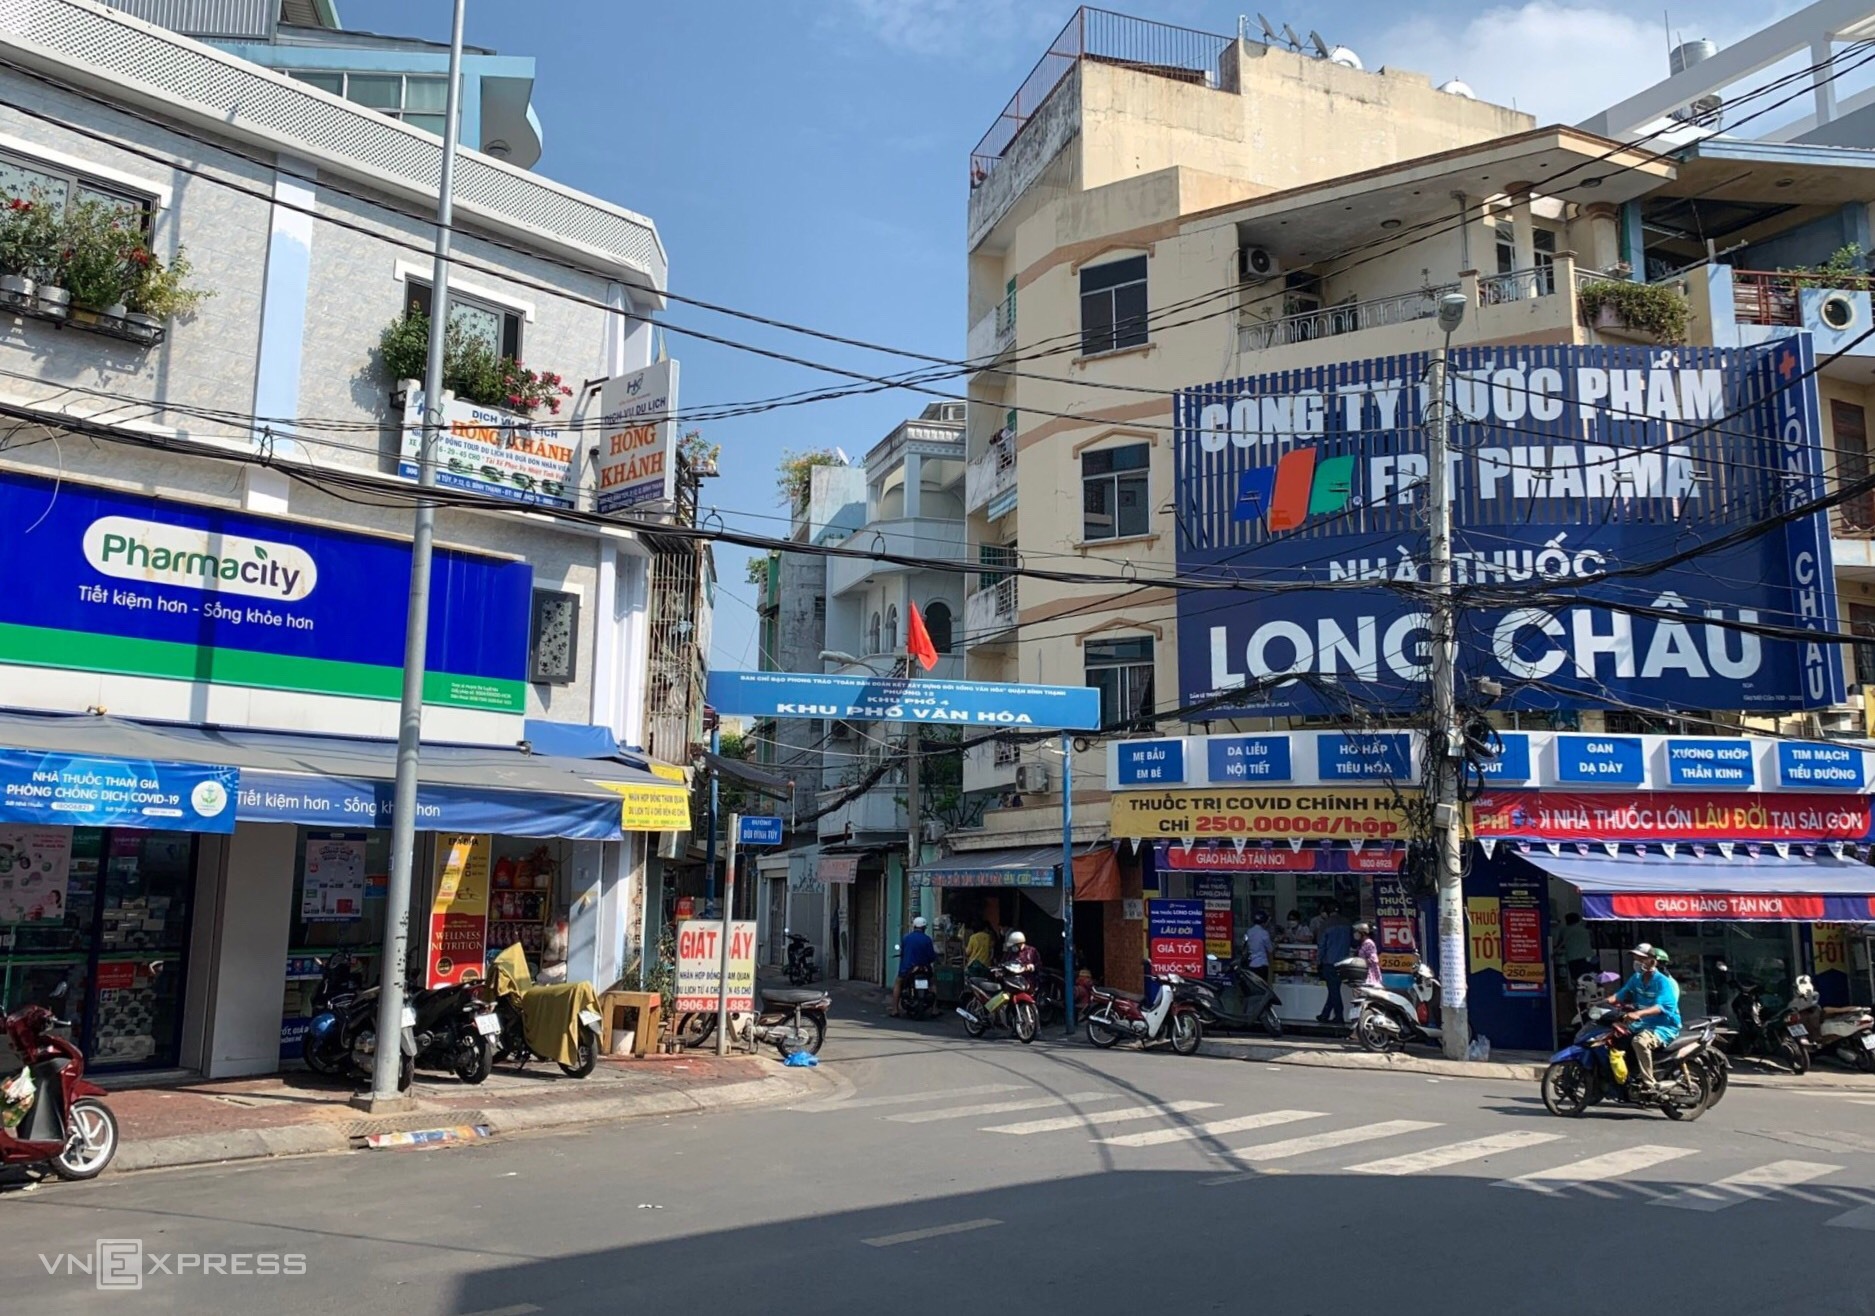 Аптеки Pharmacity (слева) и FPT Retail's Long Chau расположены рядом друг с другом в районе Биньтхань в Хошимине. Фото: VnExpress/Quynh Tran